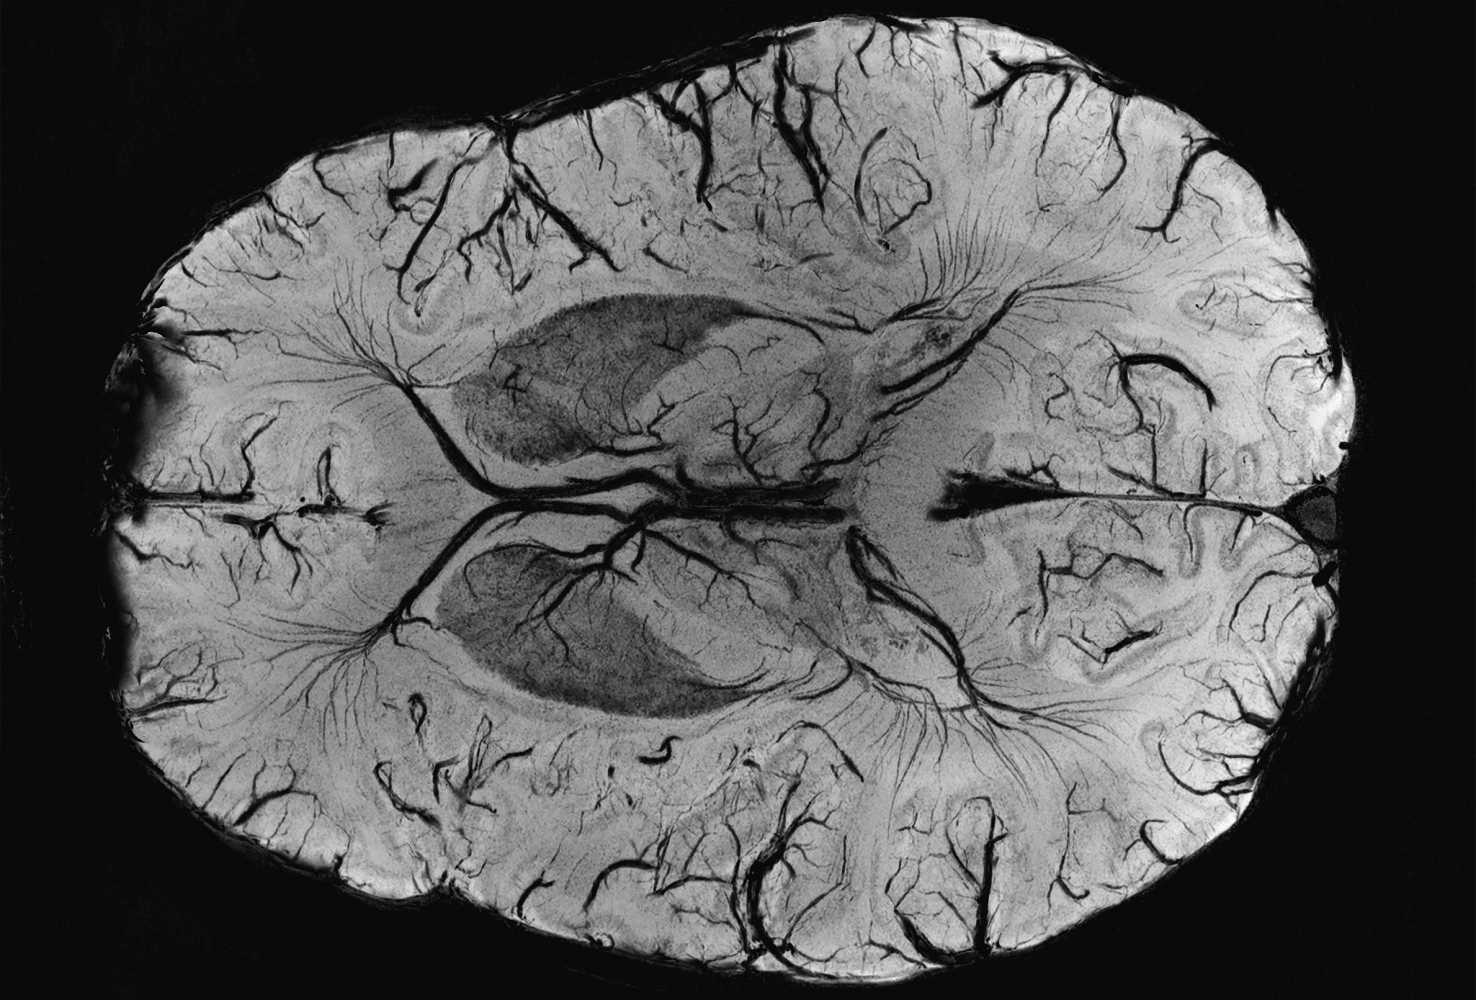 Аномалии мозга после Covid-19 обнаружили на снимках МРТ